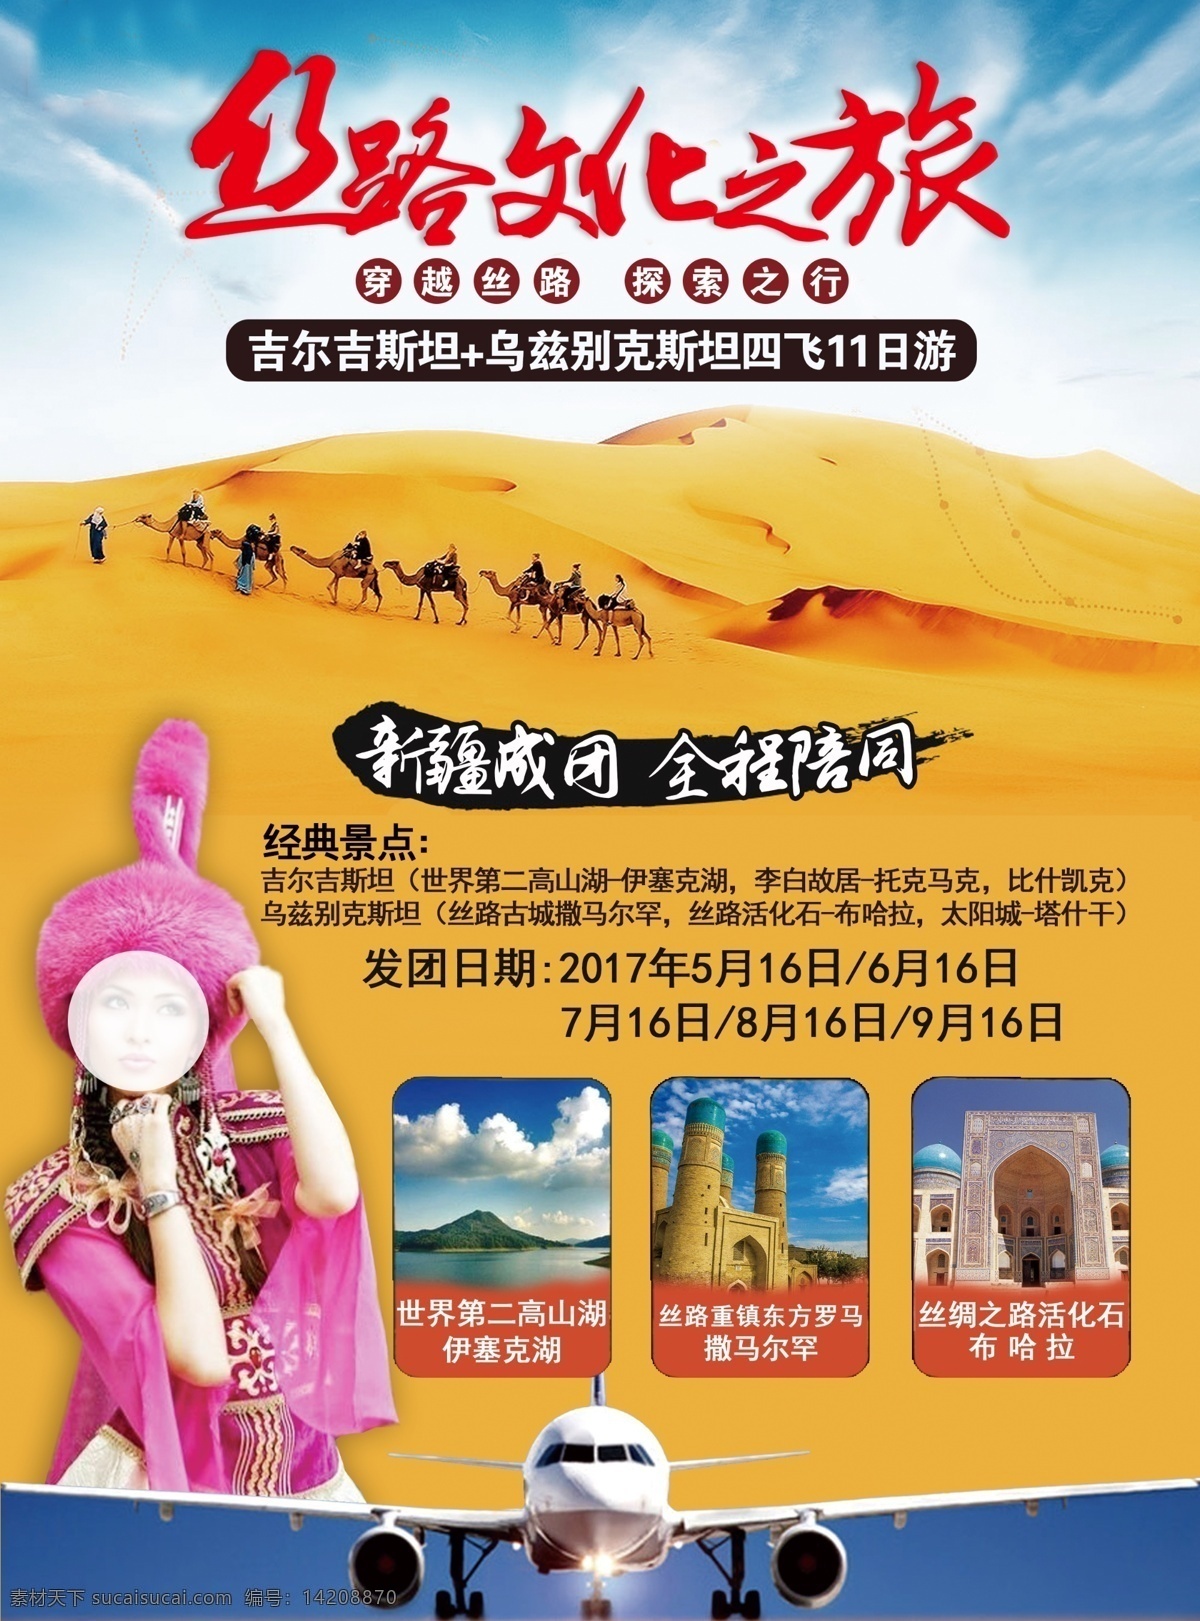 丝路文化之旅 丝绸之路 新疆 美女 旅游 沙漠 骆驼 飞机